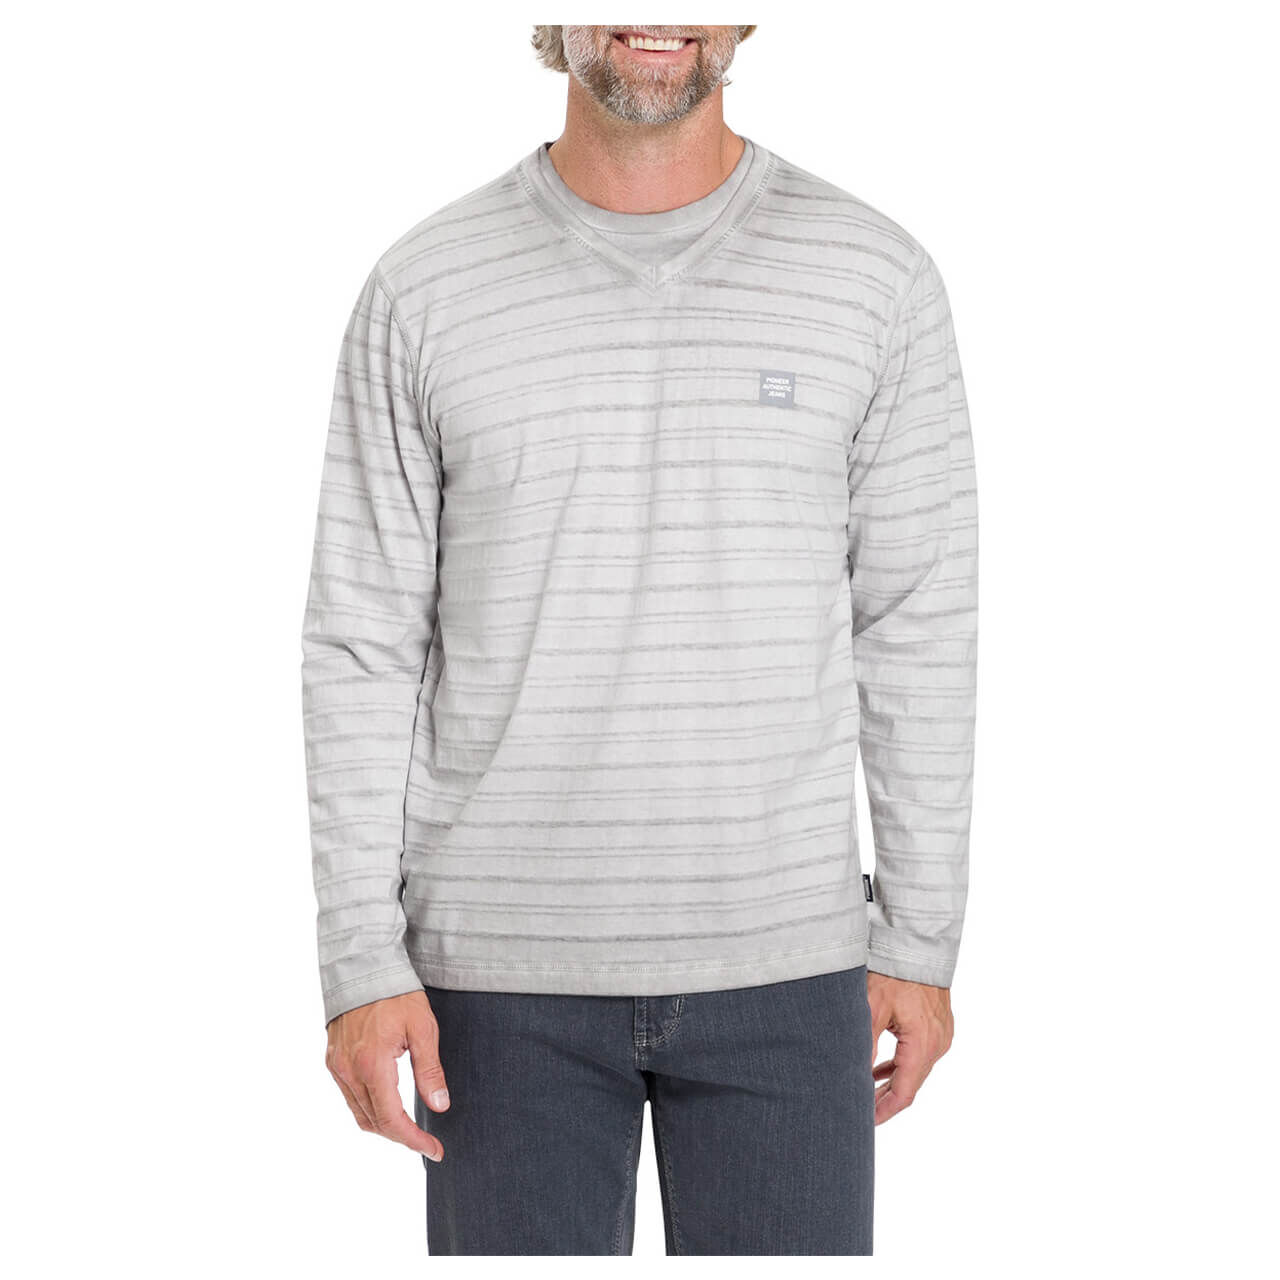 Pioneer Herren Langarm Shirt grey washed stripes